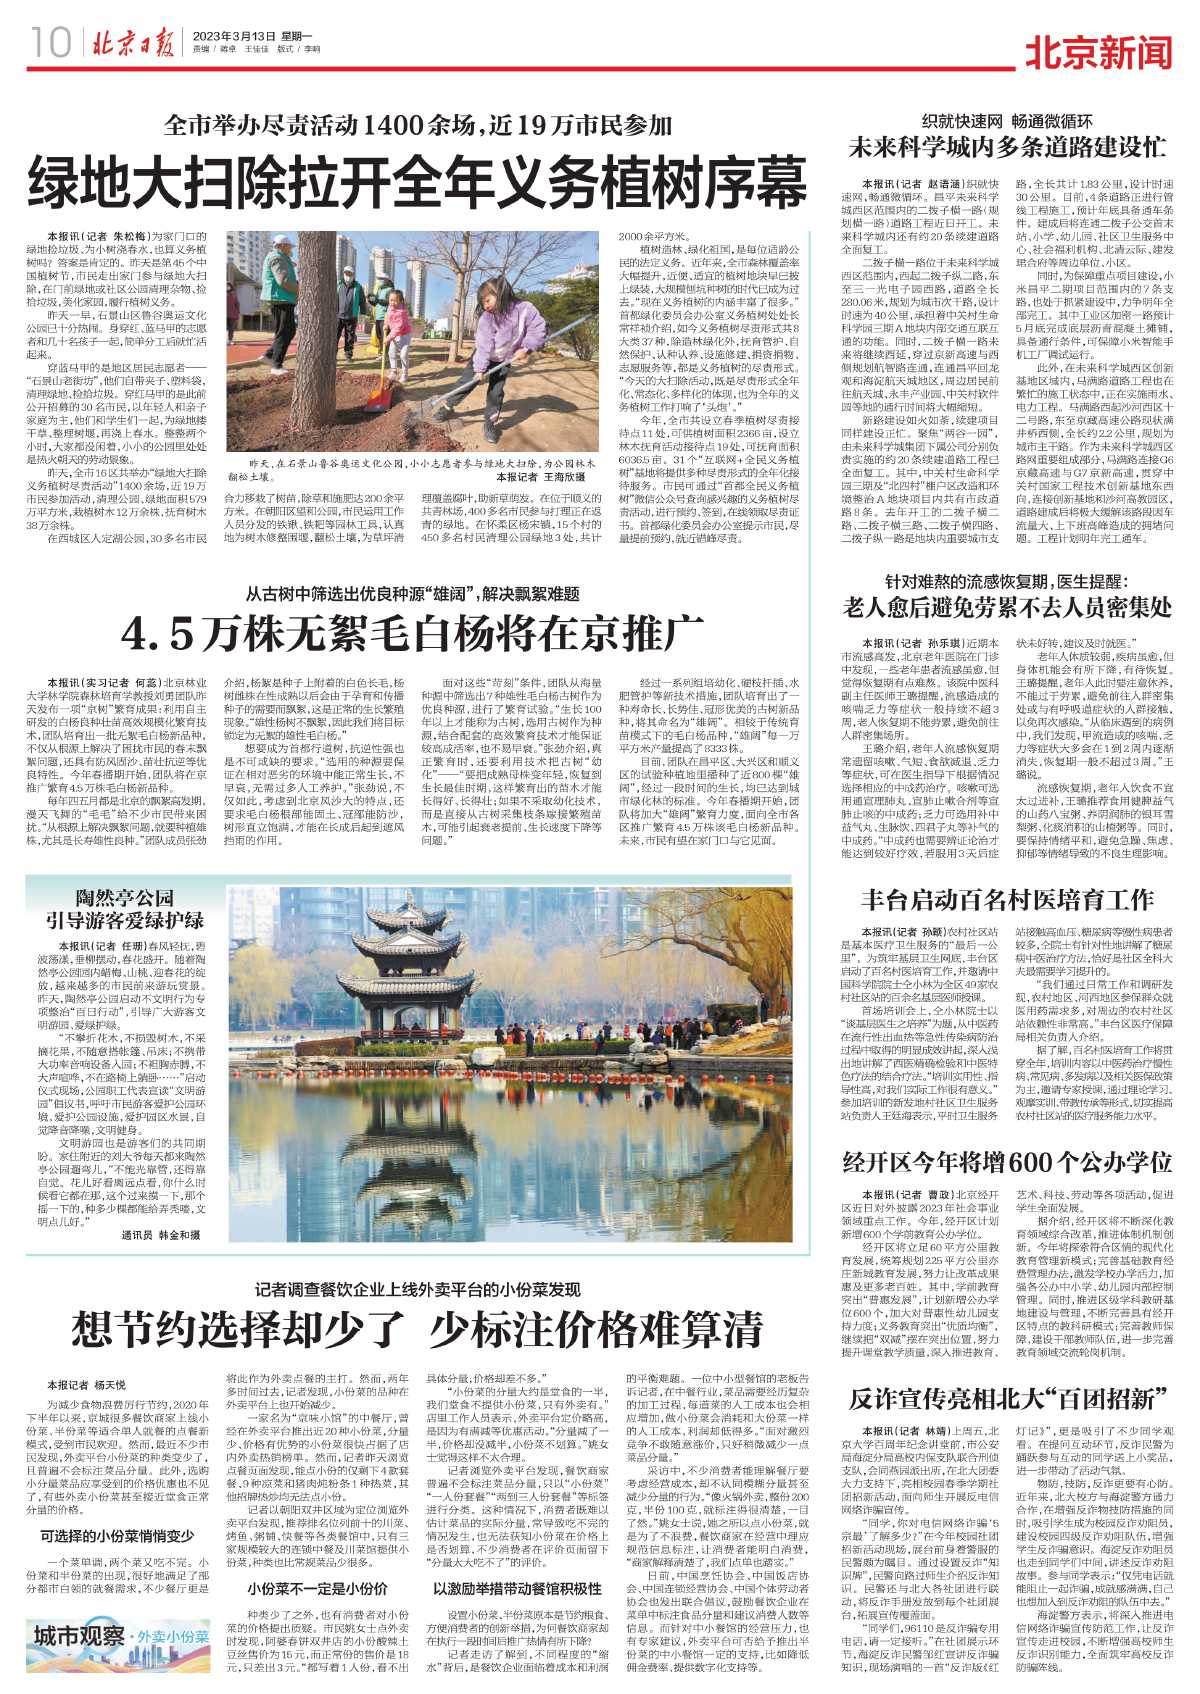 0313北京日报-全市举办尽责活动1400余场，近19万市民参加%0A绿地大扫除拉开全年义务植树序幕.jpg